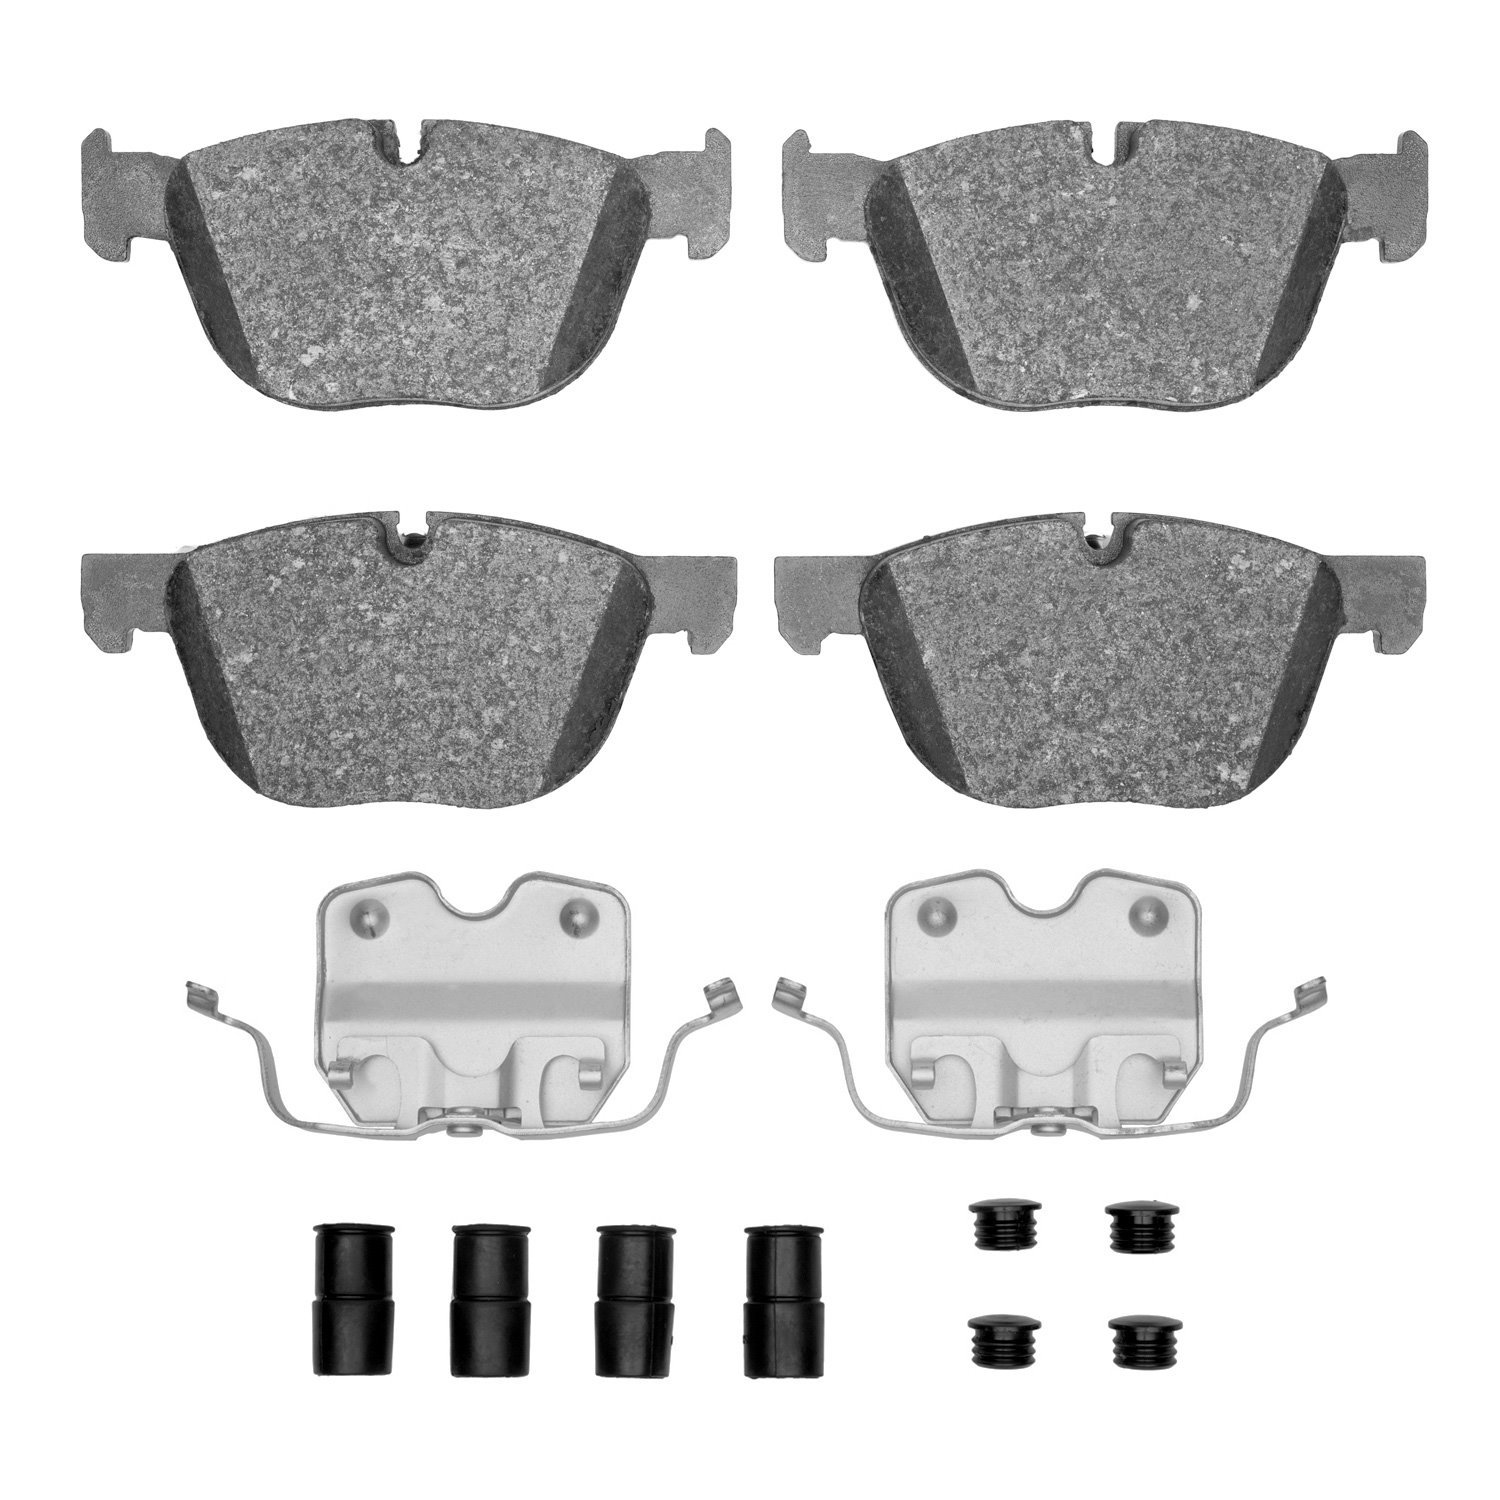 1552-1294-01 5000 Advanced Low-Metallic Brake Pads & Hardware Kit, 2007-2018 BMW, Position: Front